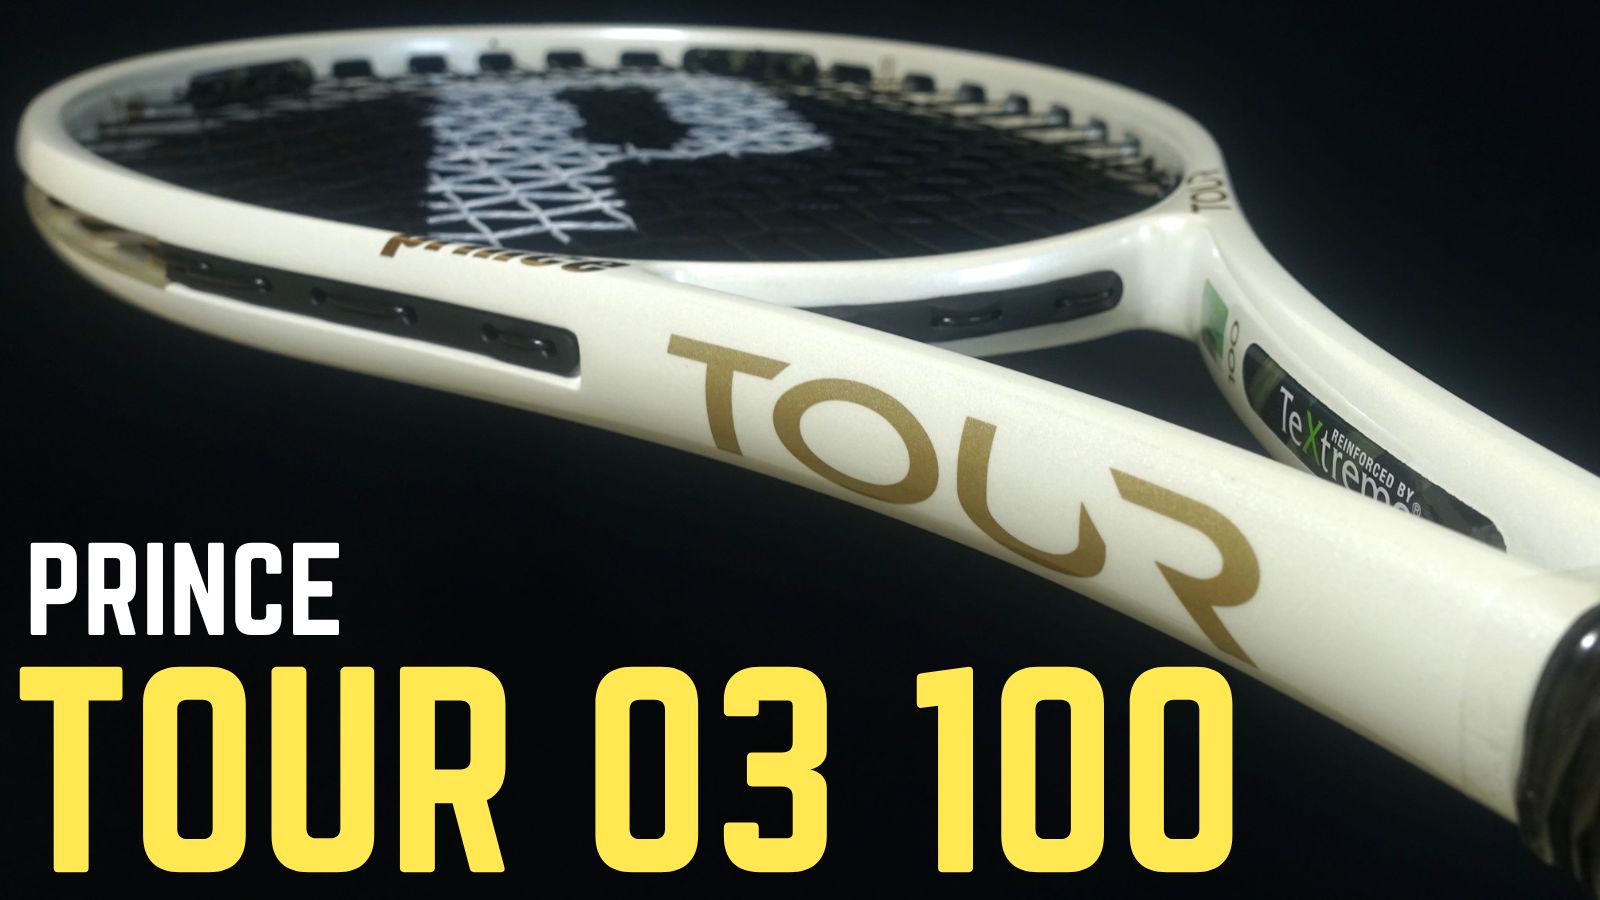 テニスラケット プリンス ツアー オースリー 100(290g) 2020年モデル (G2)PRINCE TOUR O3 100(290g) 2020